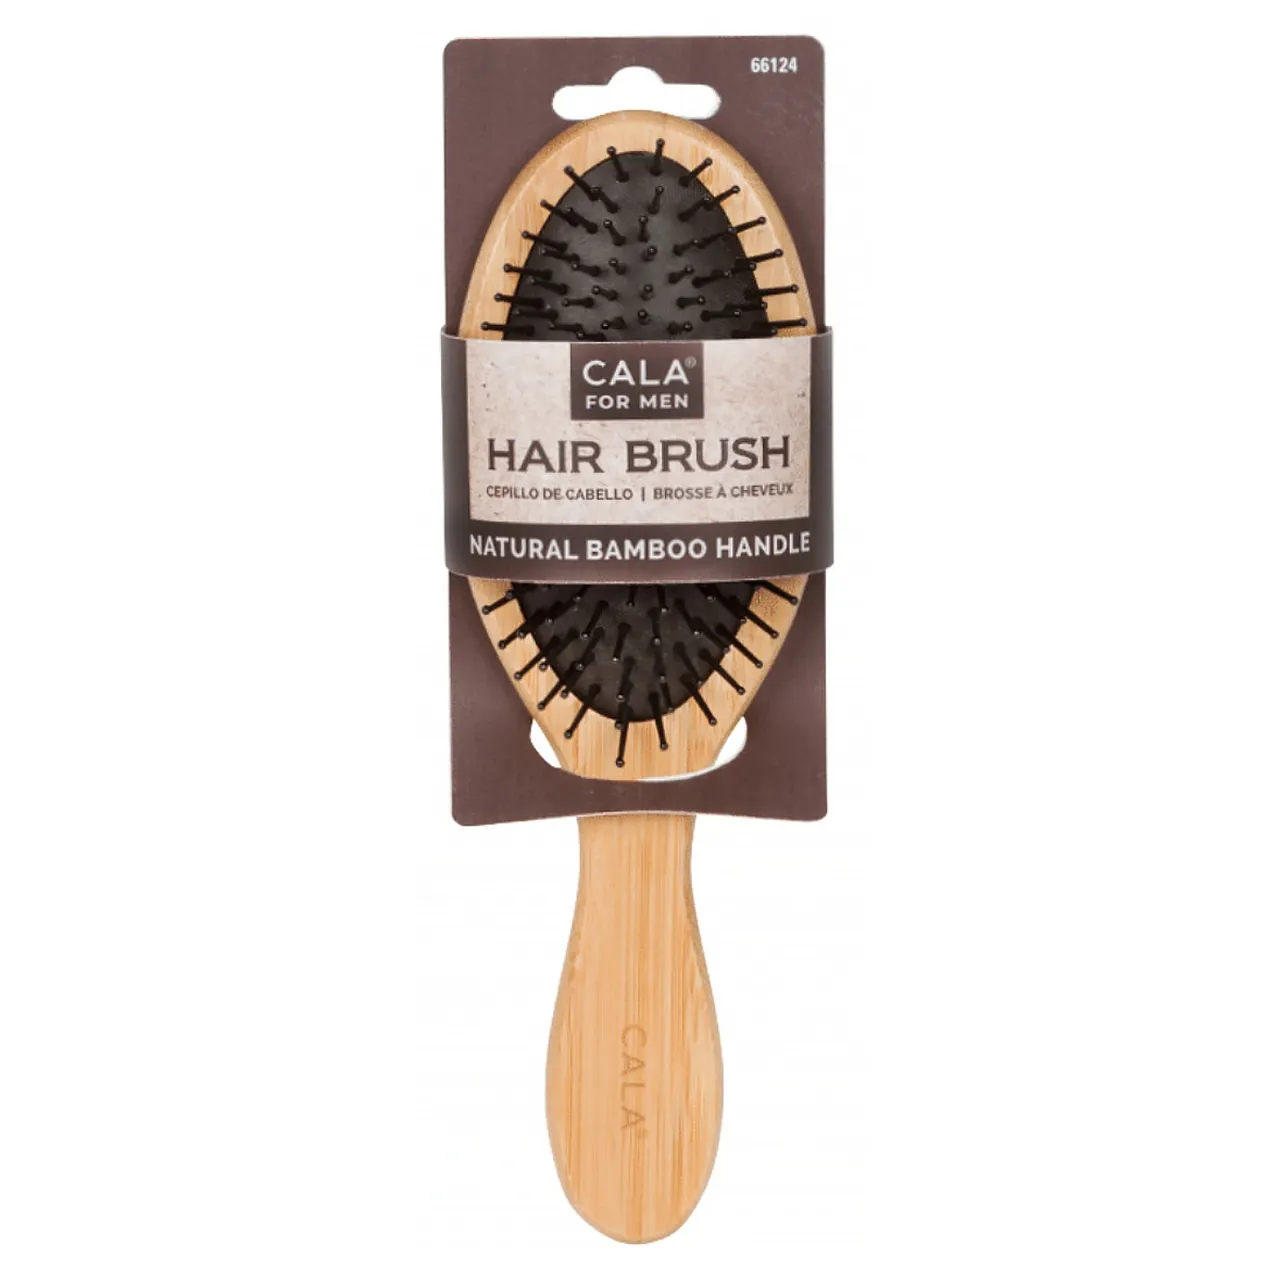 Cepillo de Cabello Natural Bamboo Hair Brush Cala (Wahl) Ref: 66124